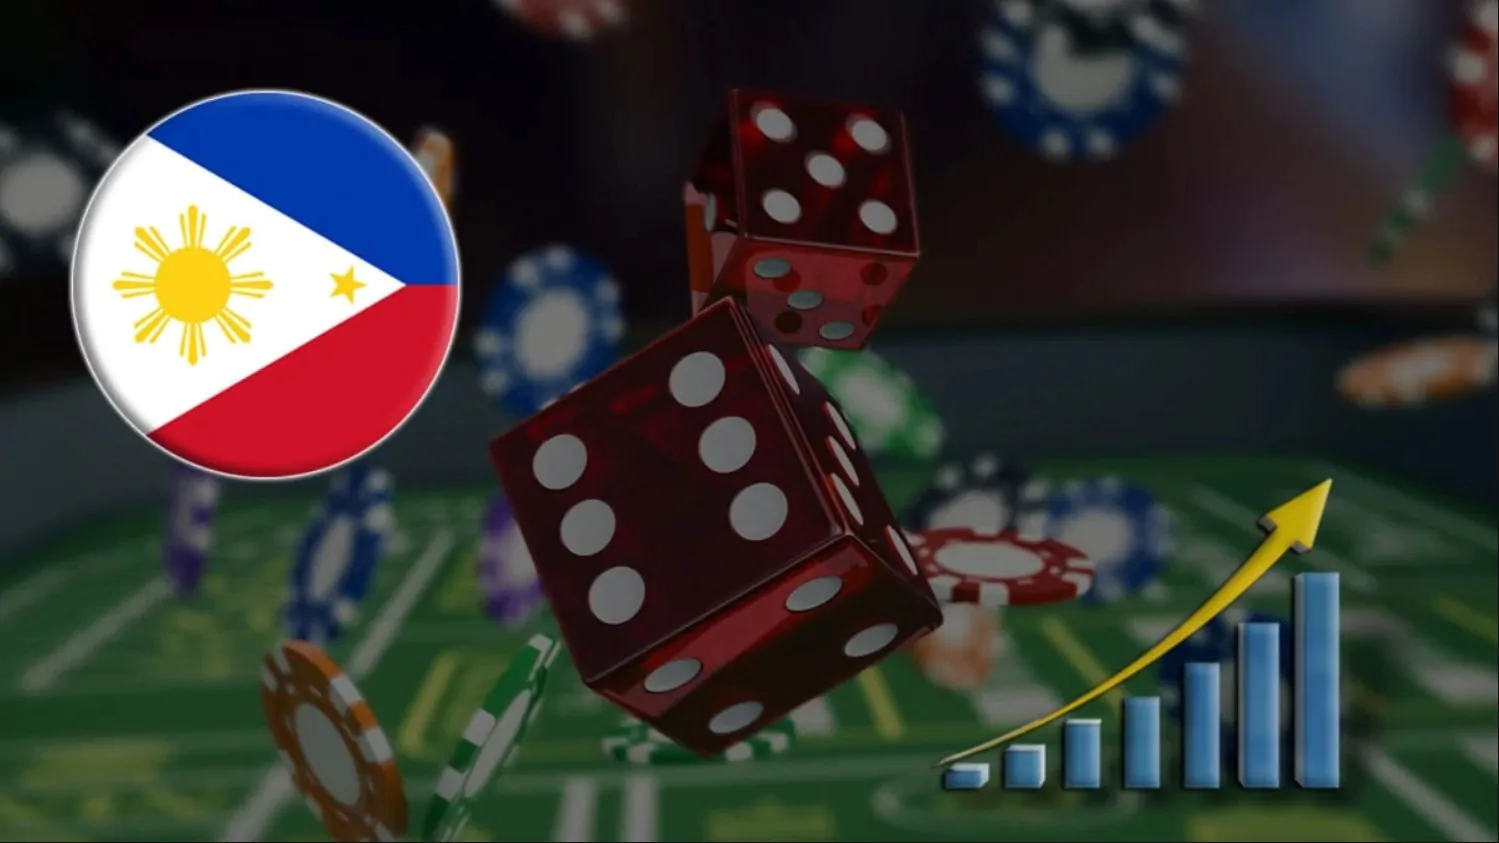 Legit Online Casino Philippines